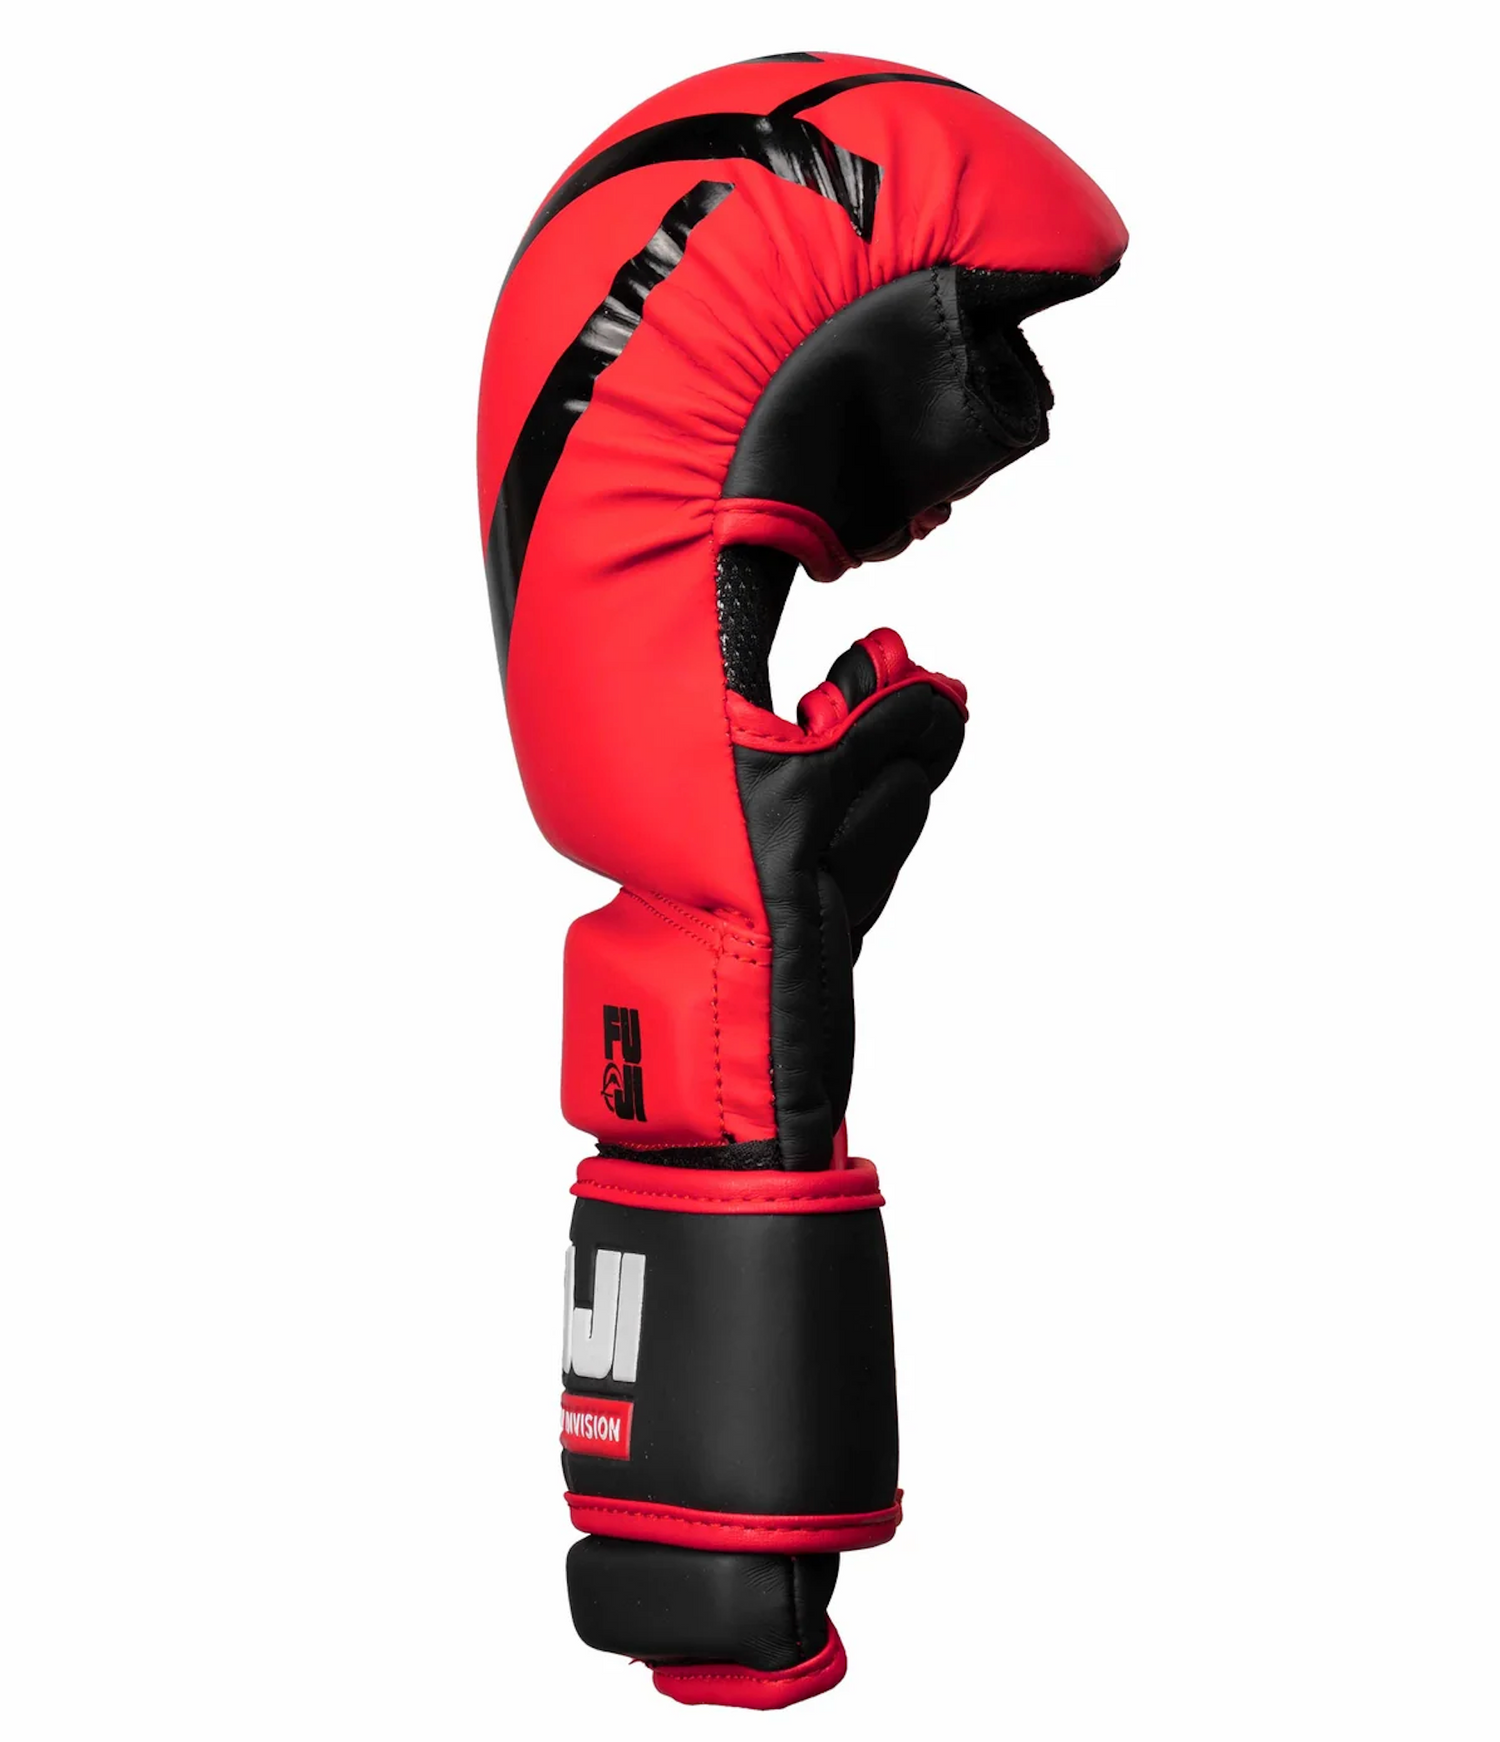 Essential Hybrid MMA Gloves by Fuji